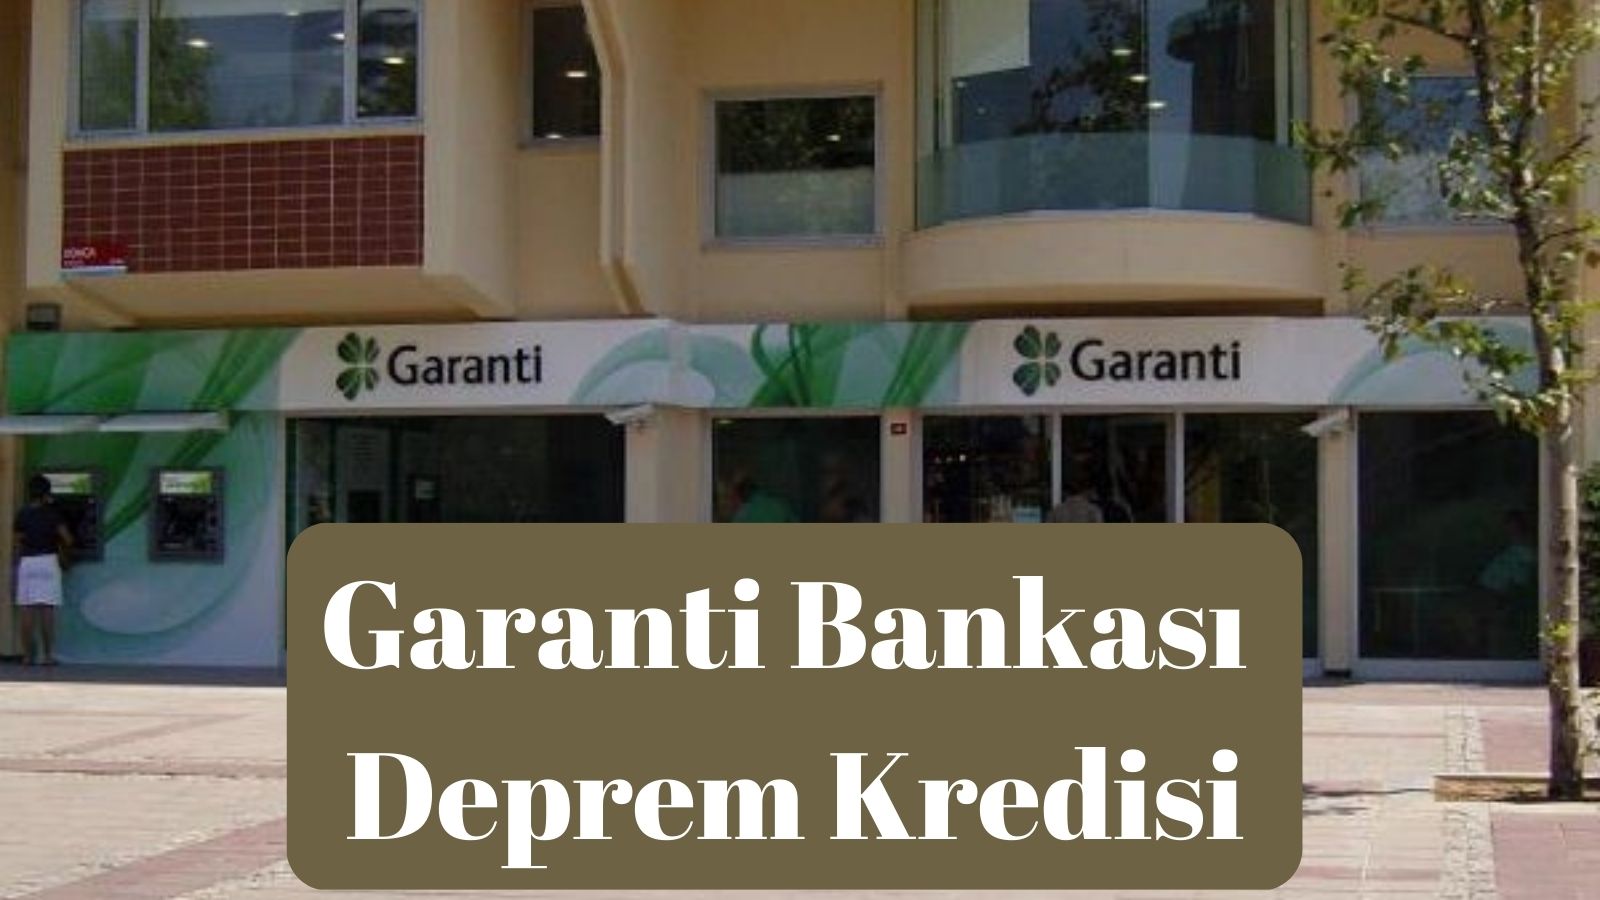 Garanti Bankası Deprem Kredisi